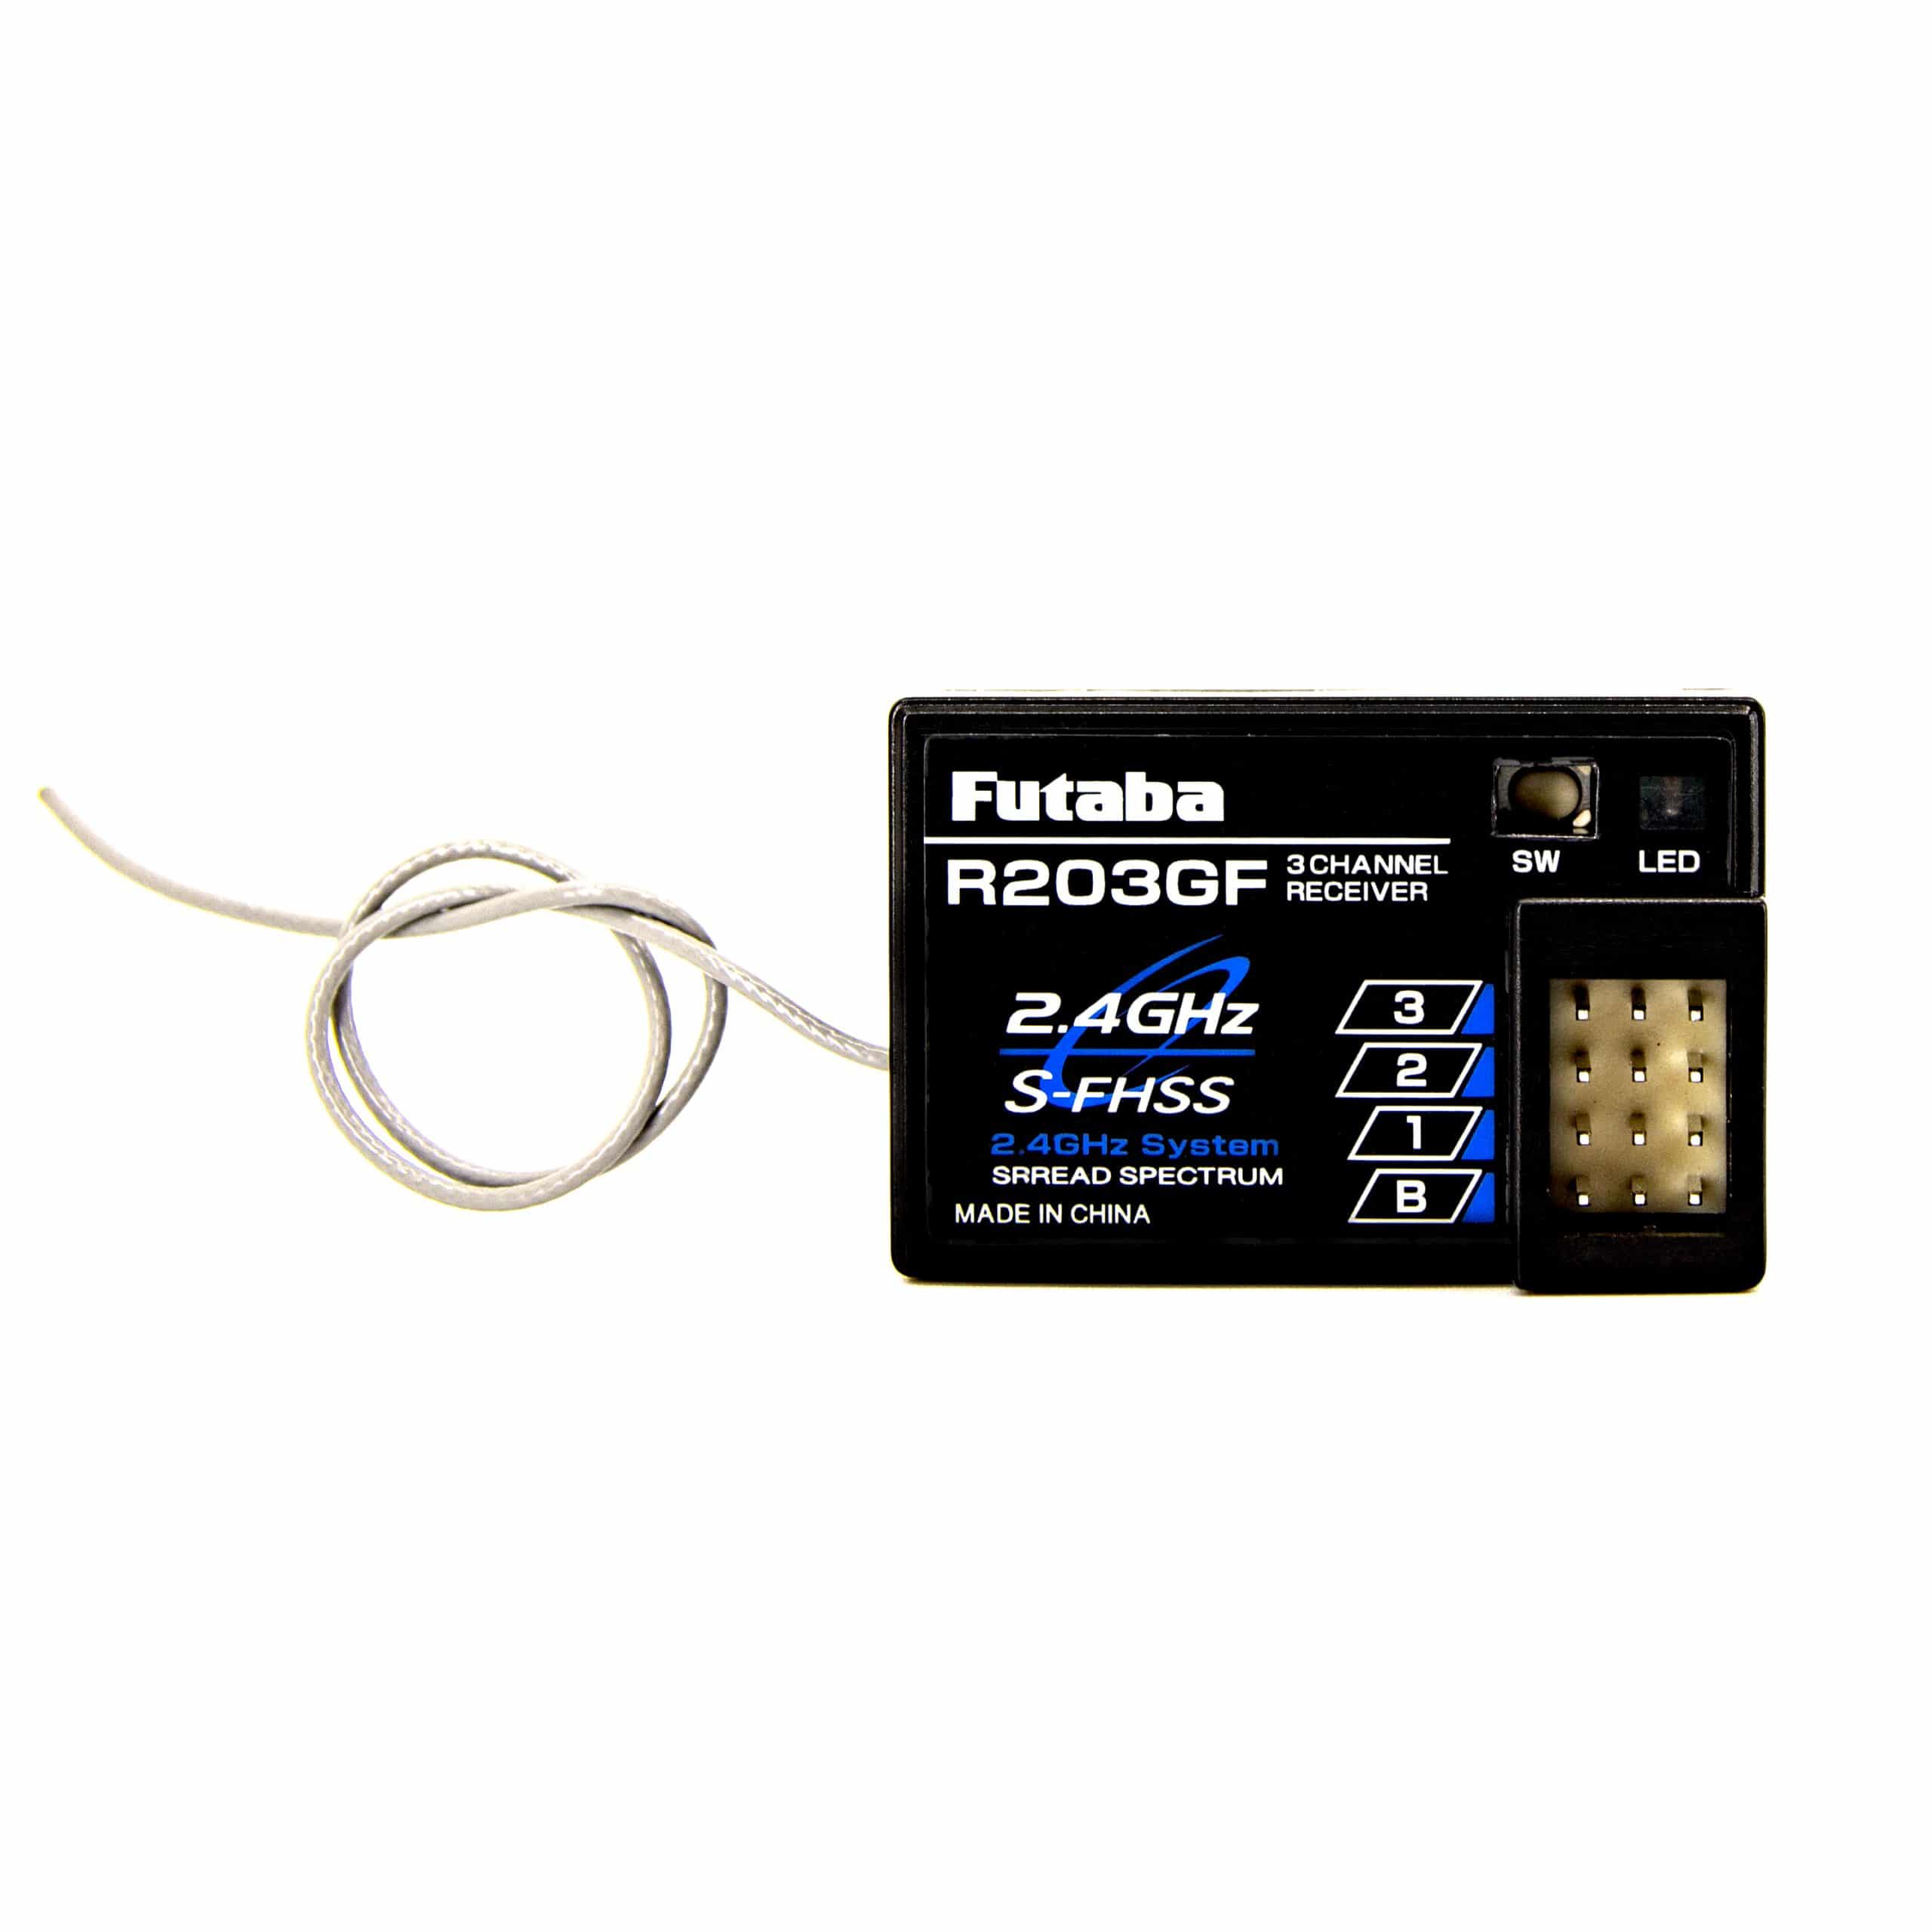 Futaba R203GF 2.4GHz S-FHSS 3-Channel Receiver FUT01102237-3